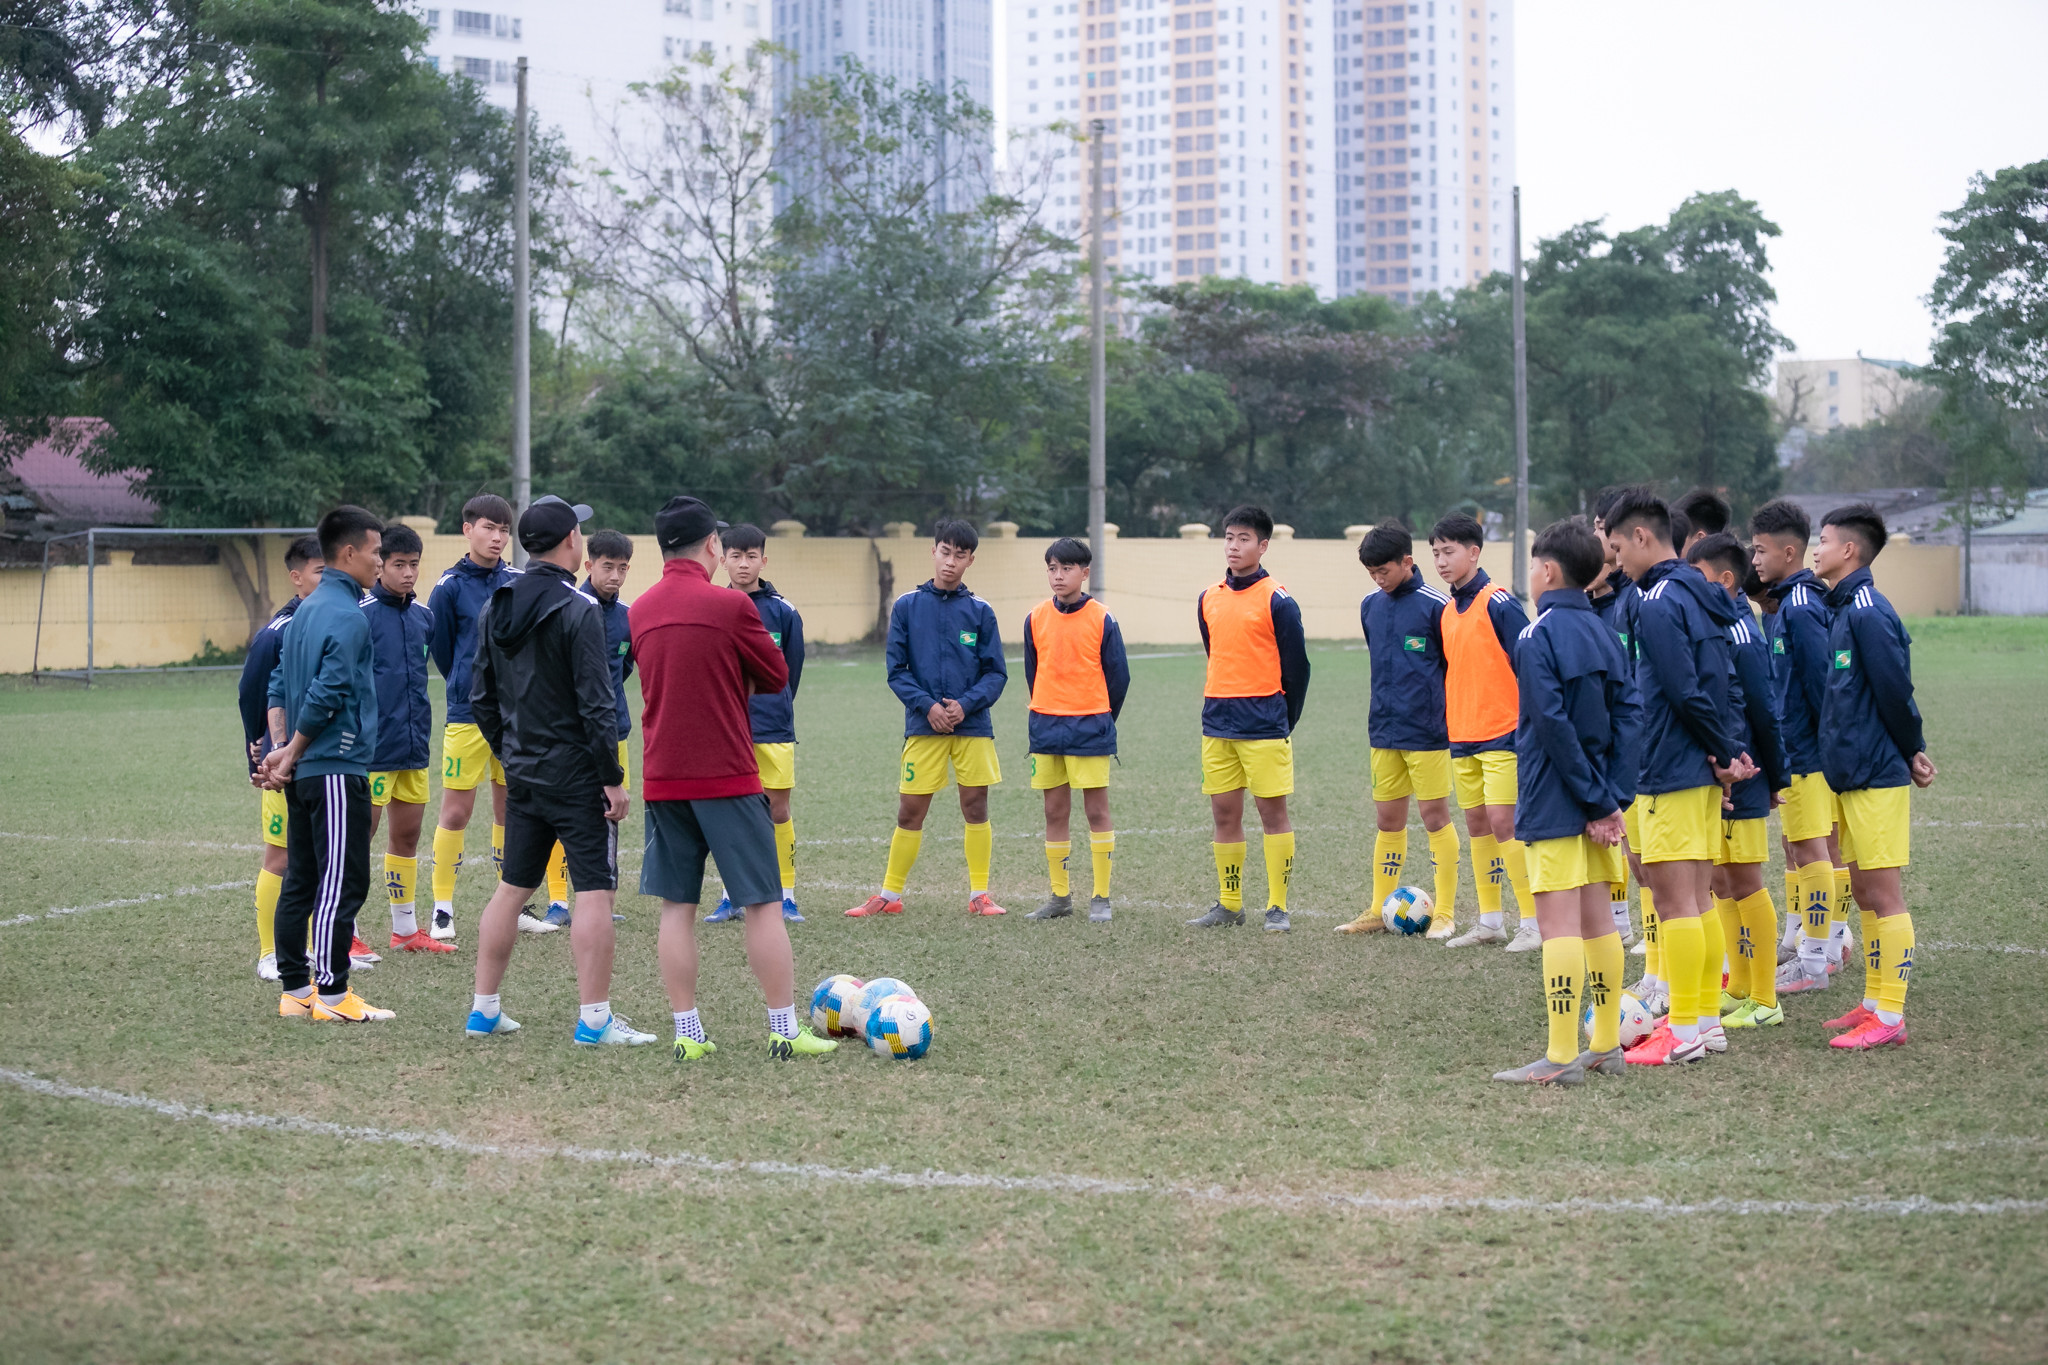 Năm 2020 là năm mà U13 SLNA đã dành chức vô địch U13 toàn quốc. Đội bóng của HLV Phan Tiến Hoài đã ghi dấu ấn khi dành rất nhiều danh hiệu như: cầu thủ xuất sắc giải, thủ môn xuất sắc nhất, dành danh hiệu Fair Play... 